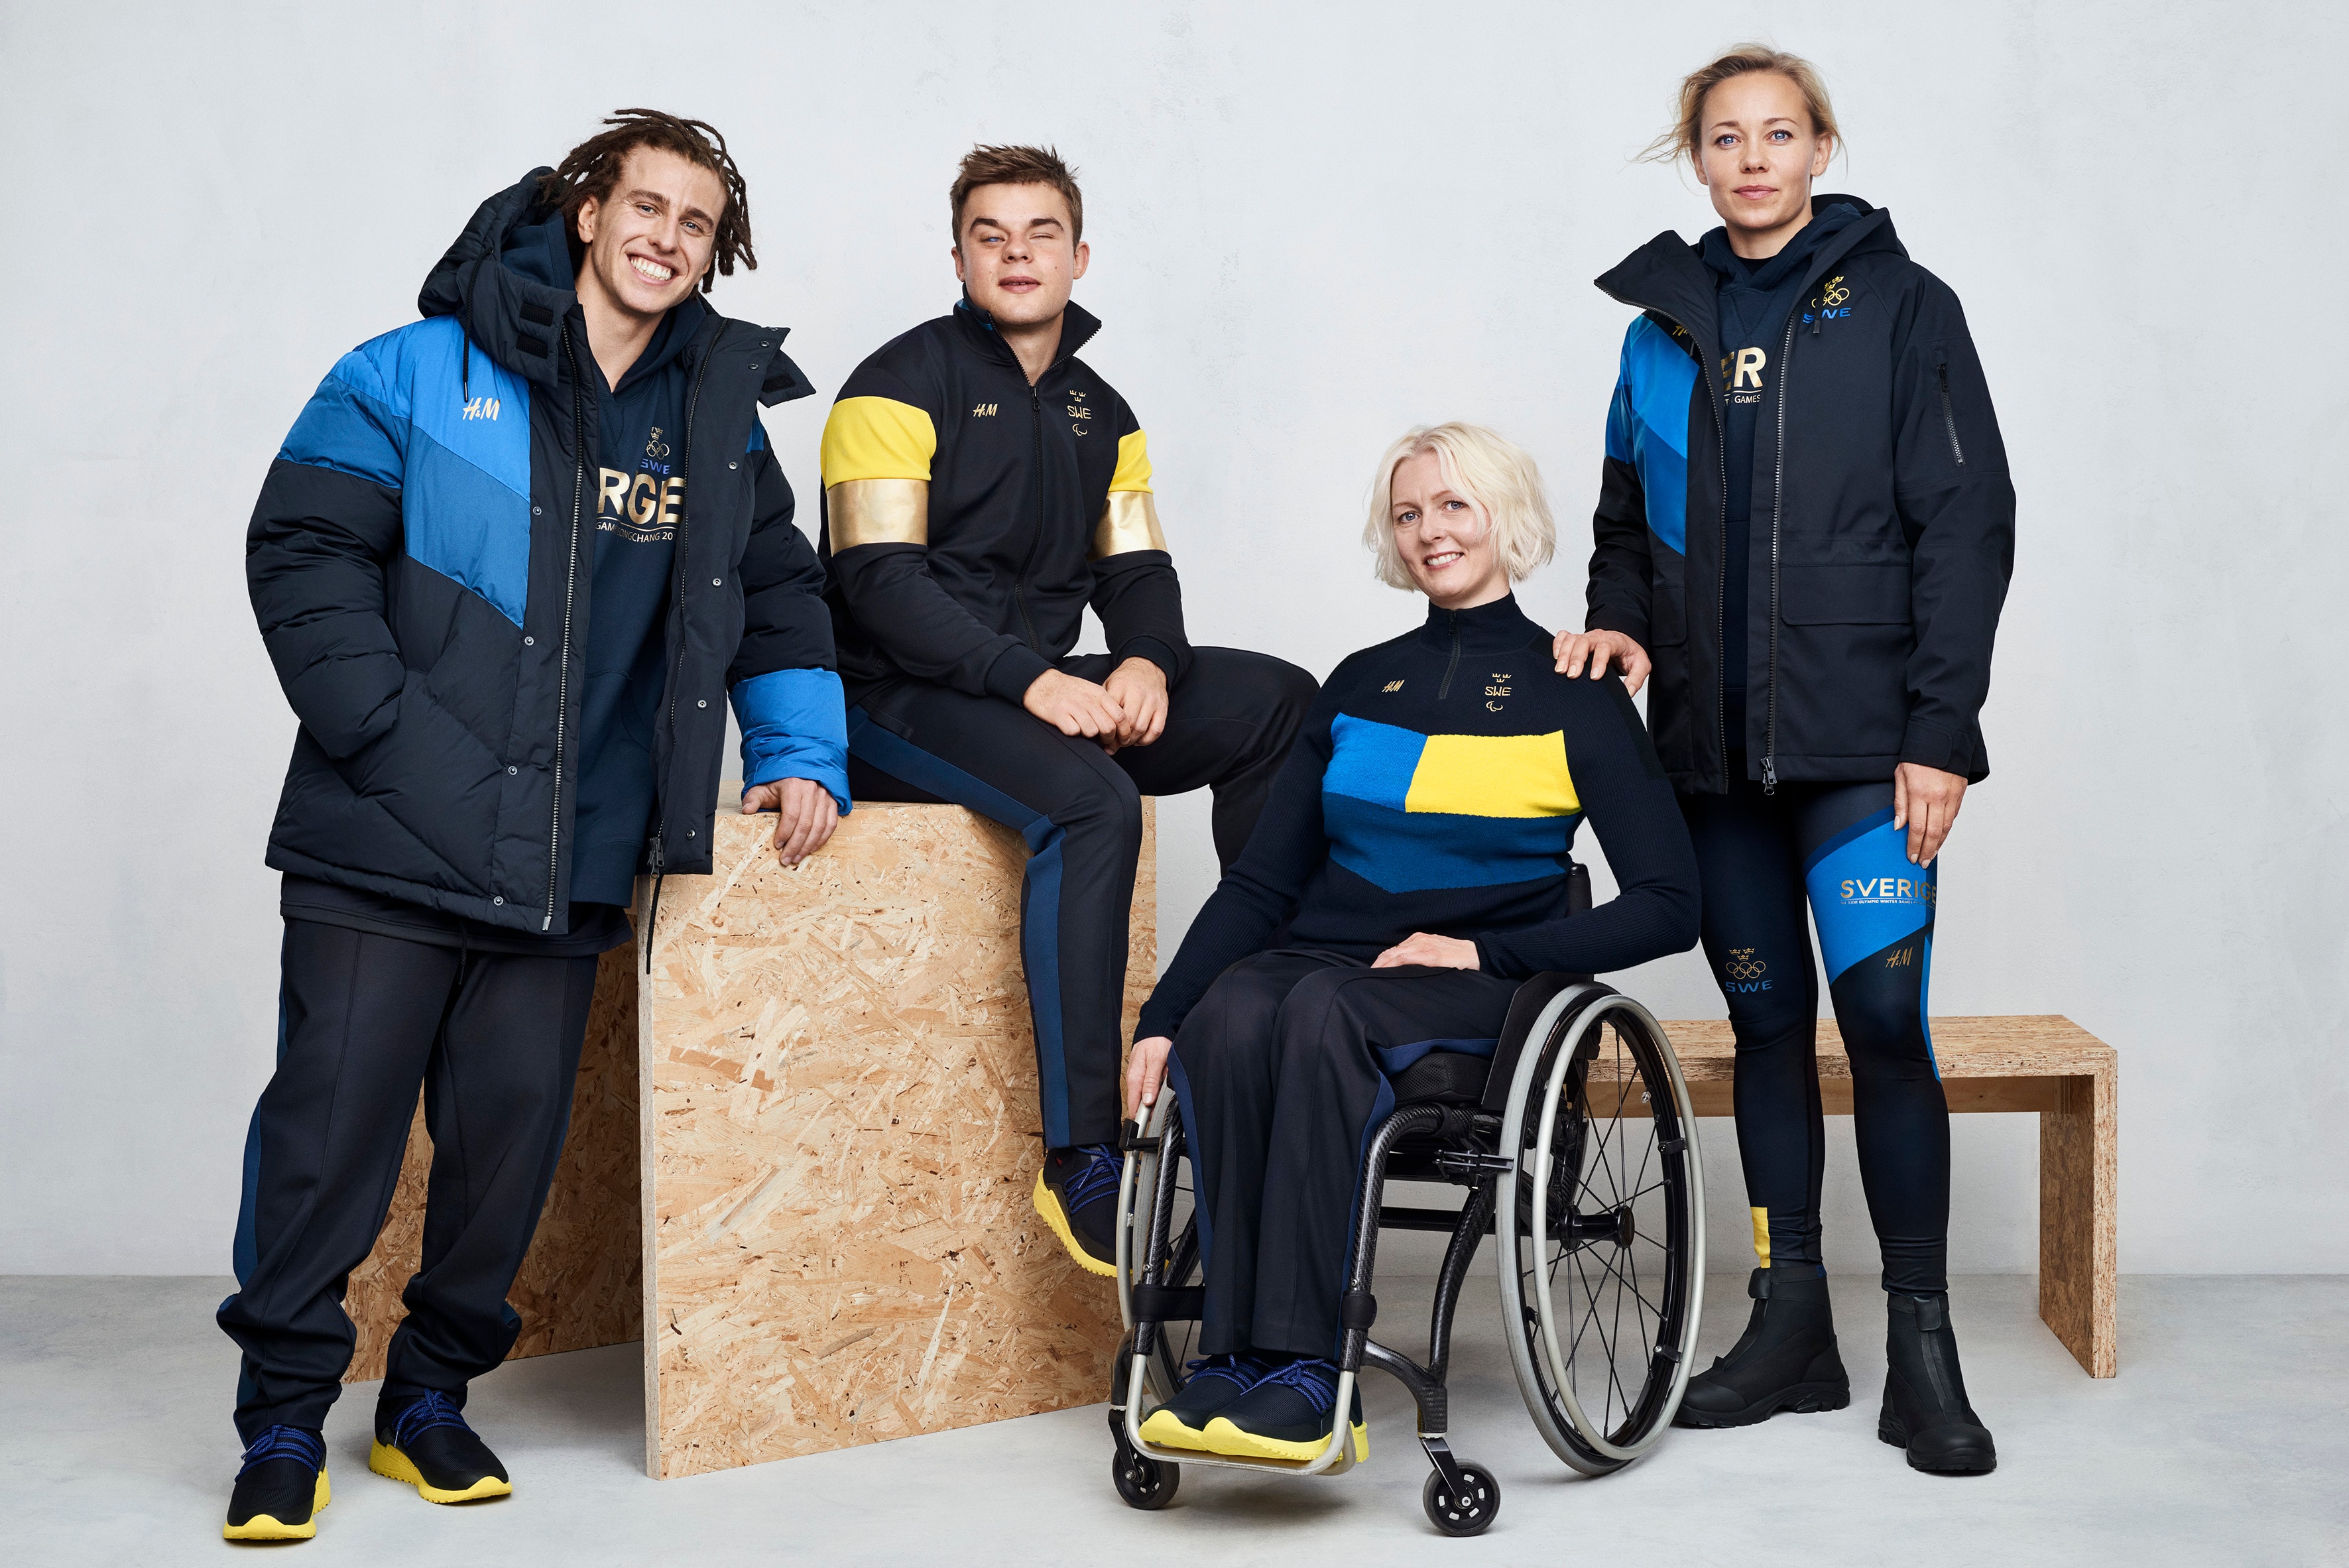 H&M 為瑞典國家隊設計冬季奧運會服飾